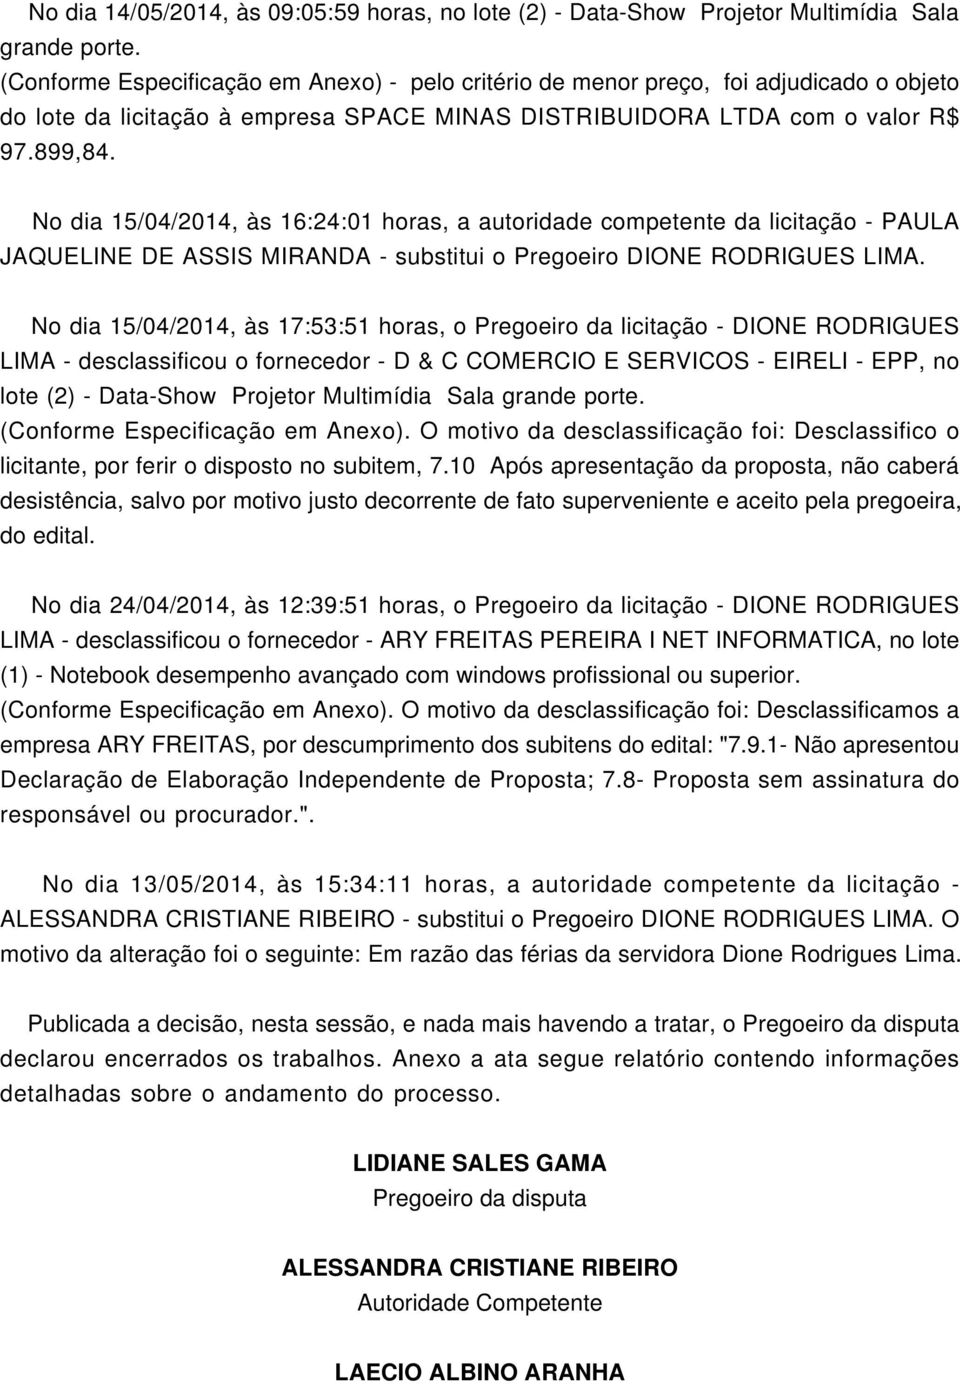 No dia 15/04/2014, às 17:53:51 horas, o Pregoeiro da licitação - DIONE RODRIGUES LIMA - desclassificou o fornecedor - D & C COMERCIO E SERVICOS - EIRELI - EPP, no lote (2) - Data-Show Projetor